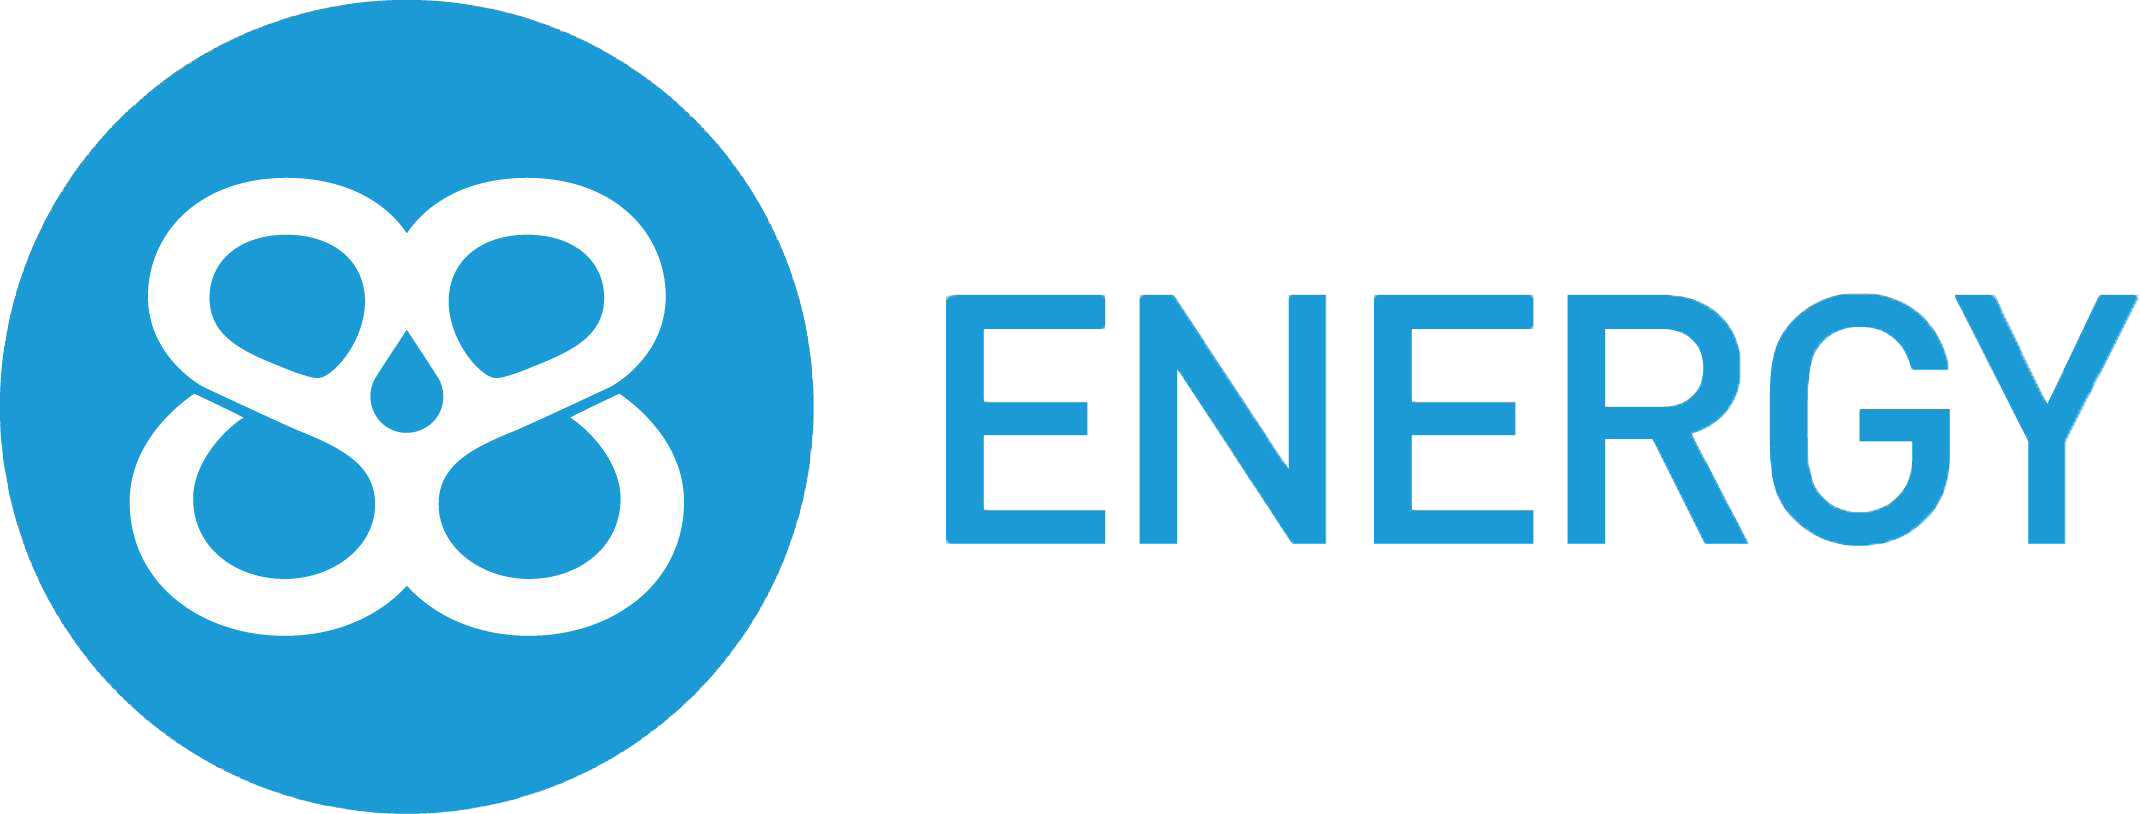 88 Energy Limited Logo